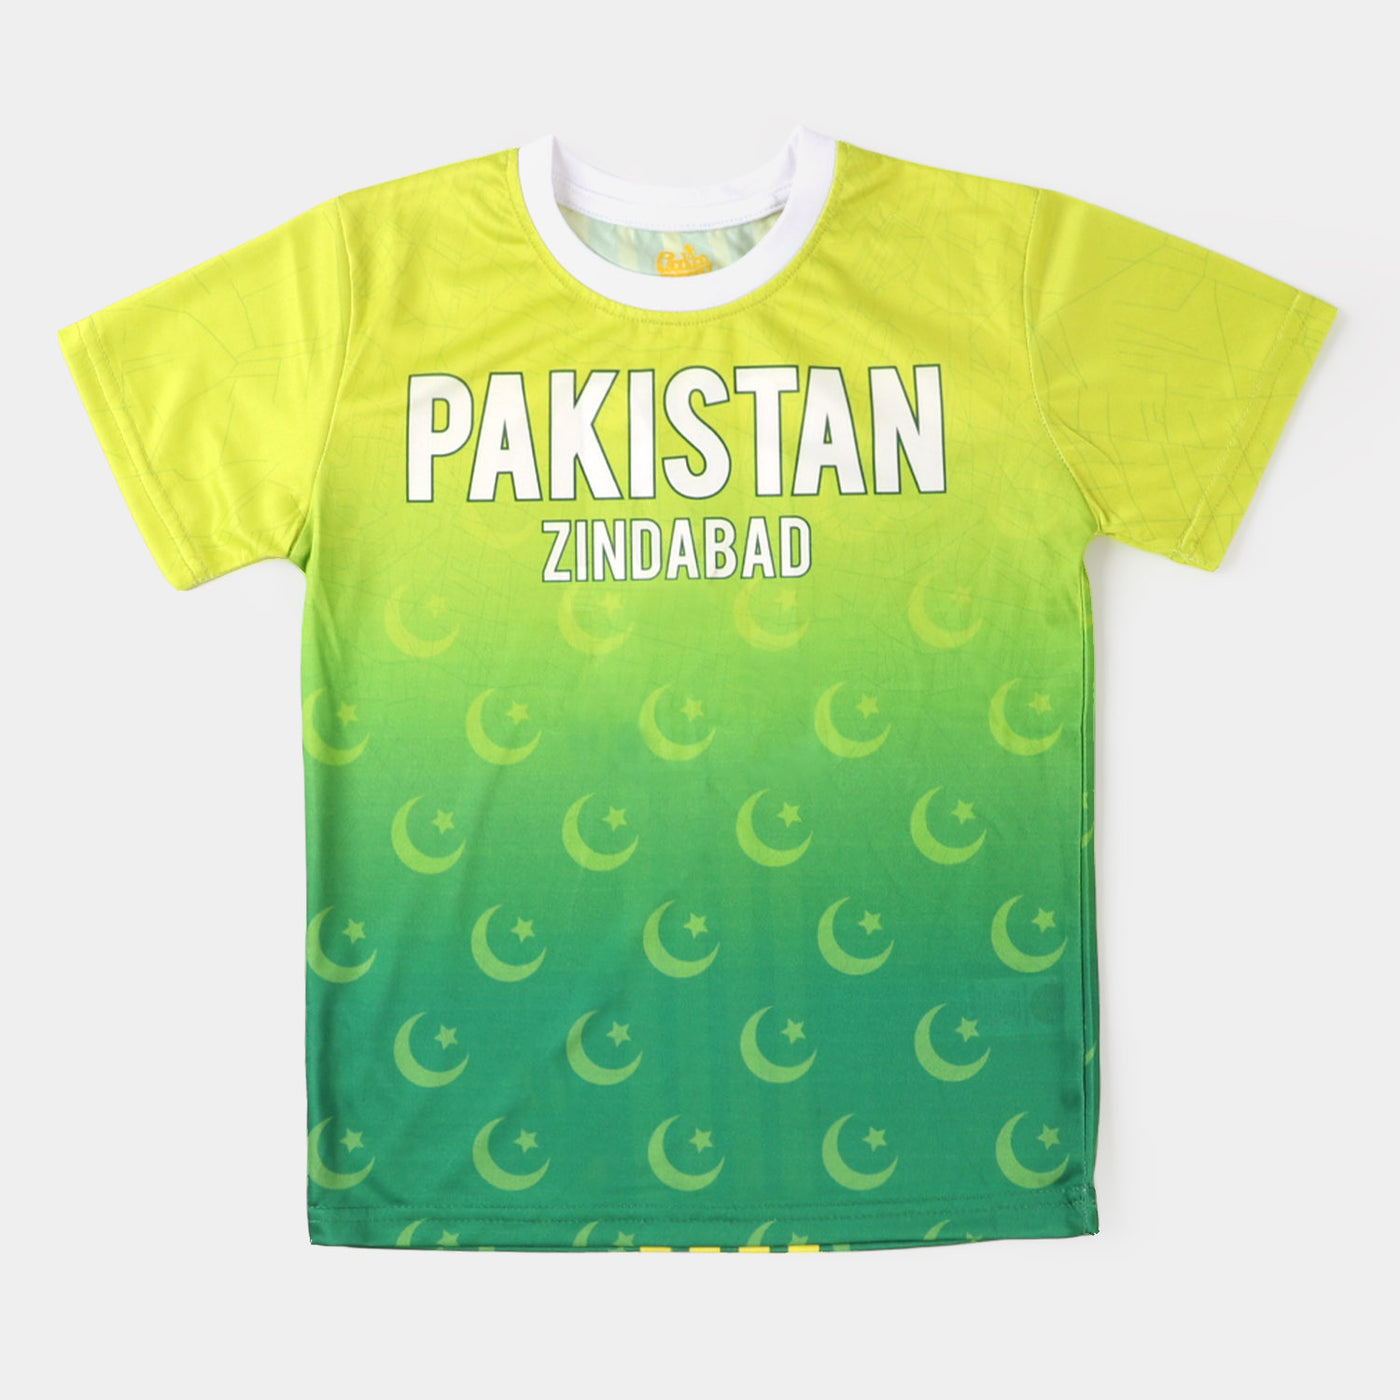 T-Shirt H/S Unisex 14 August Kit -Fern Green